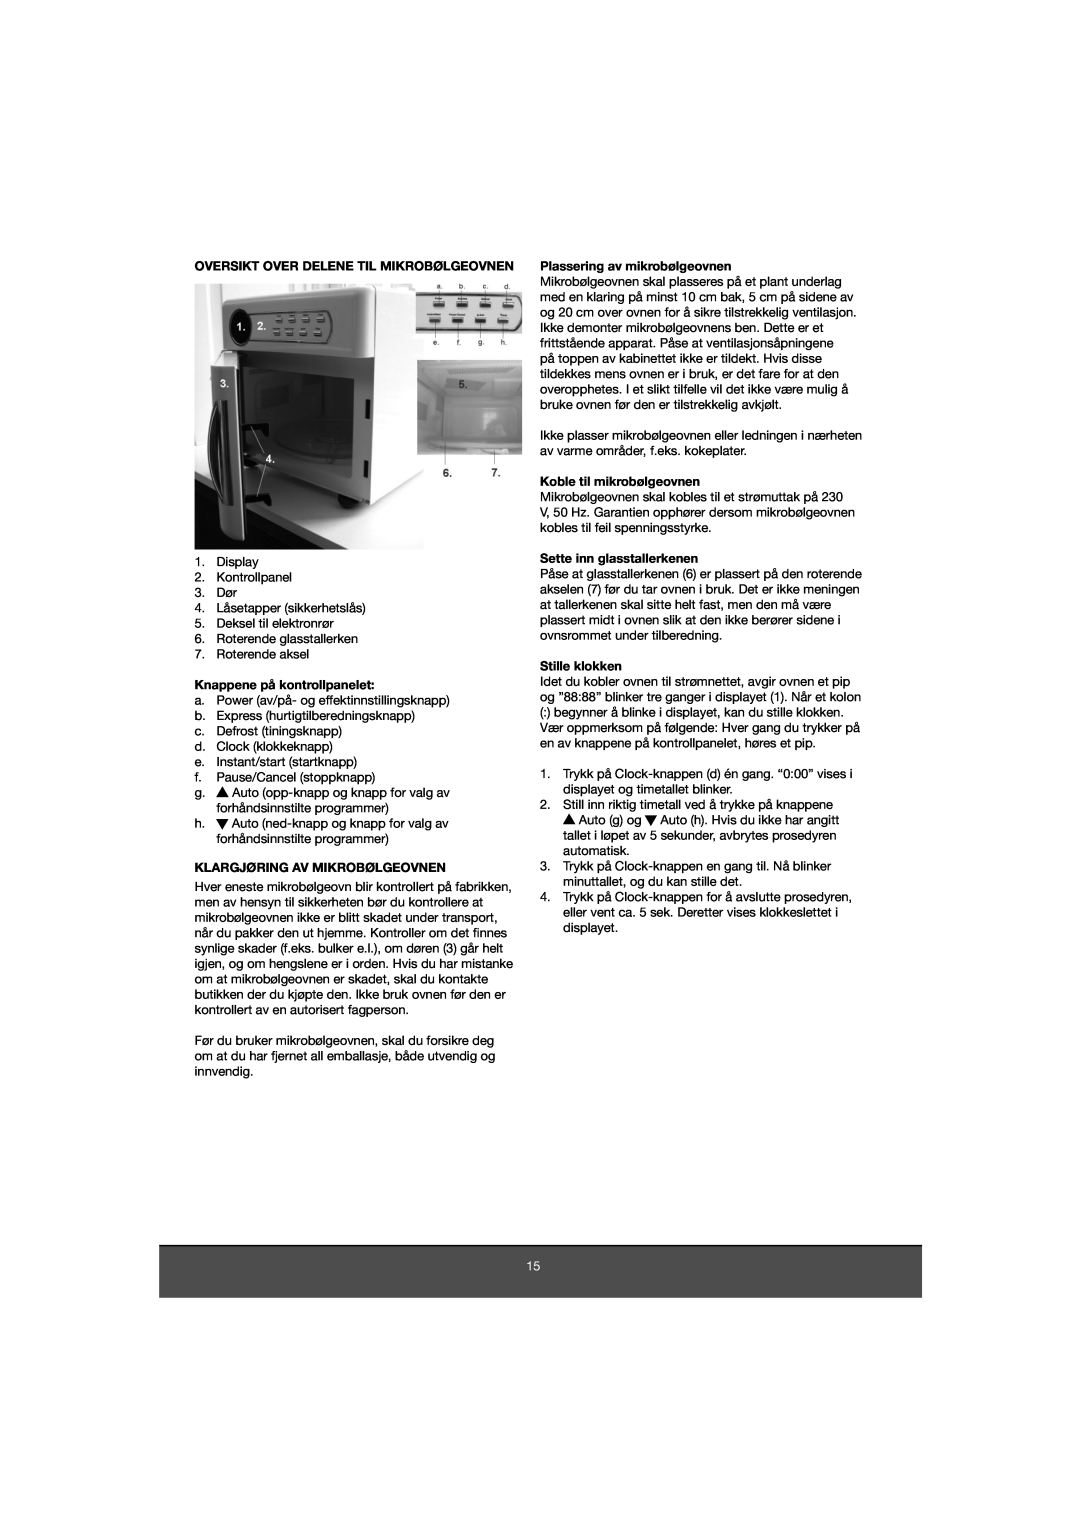 Melissa 653-081 Oversikt Over Delene Til Mikrobølgeovnen, Knappene på kontrollpanelet, Klargjøring Av Mikrobølgeovnen 